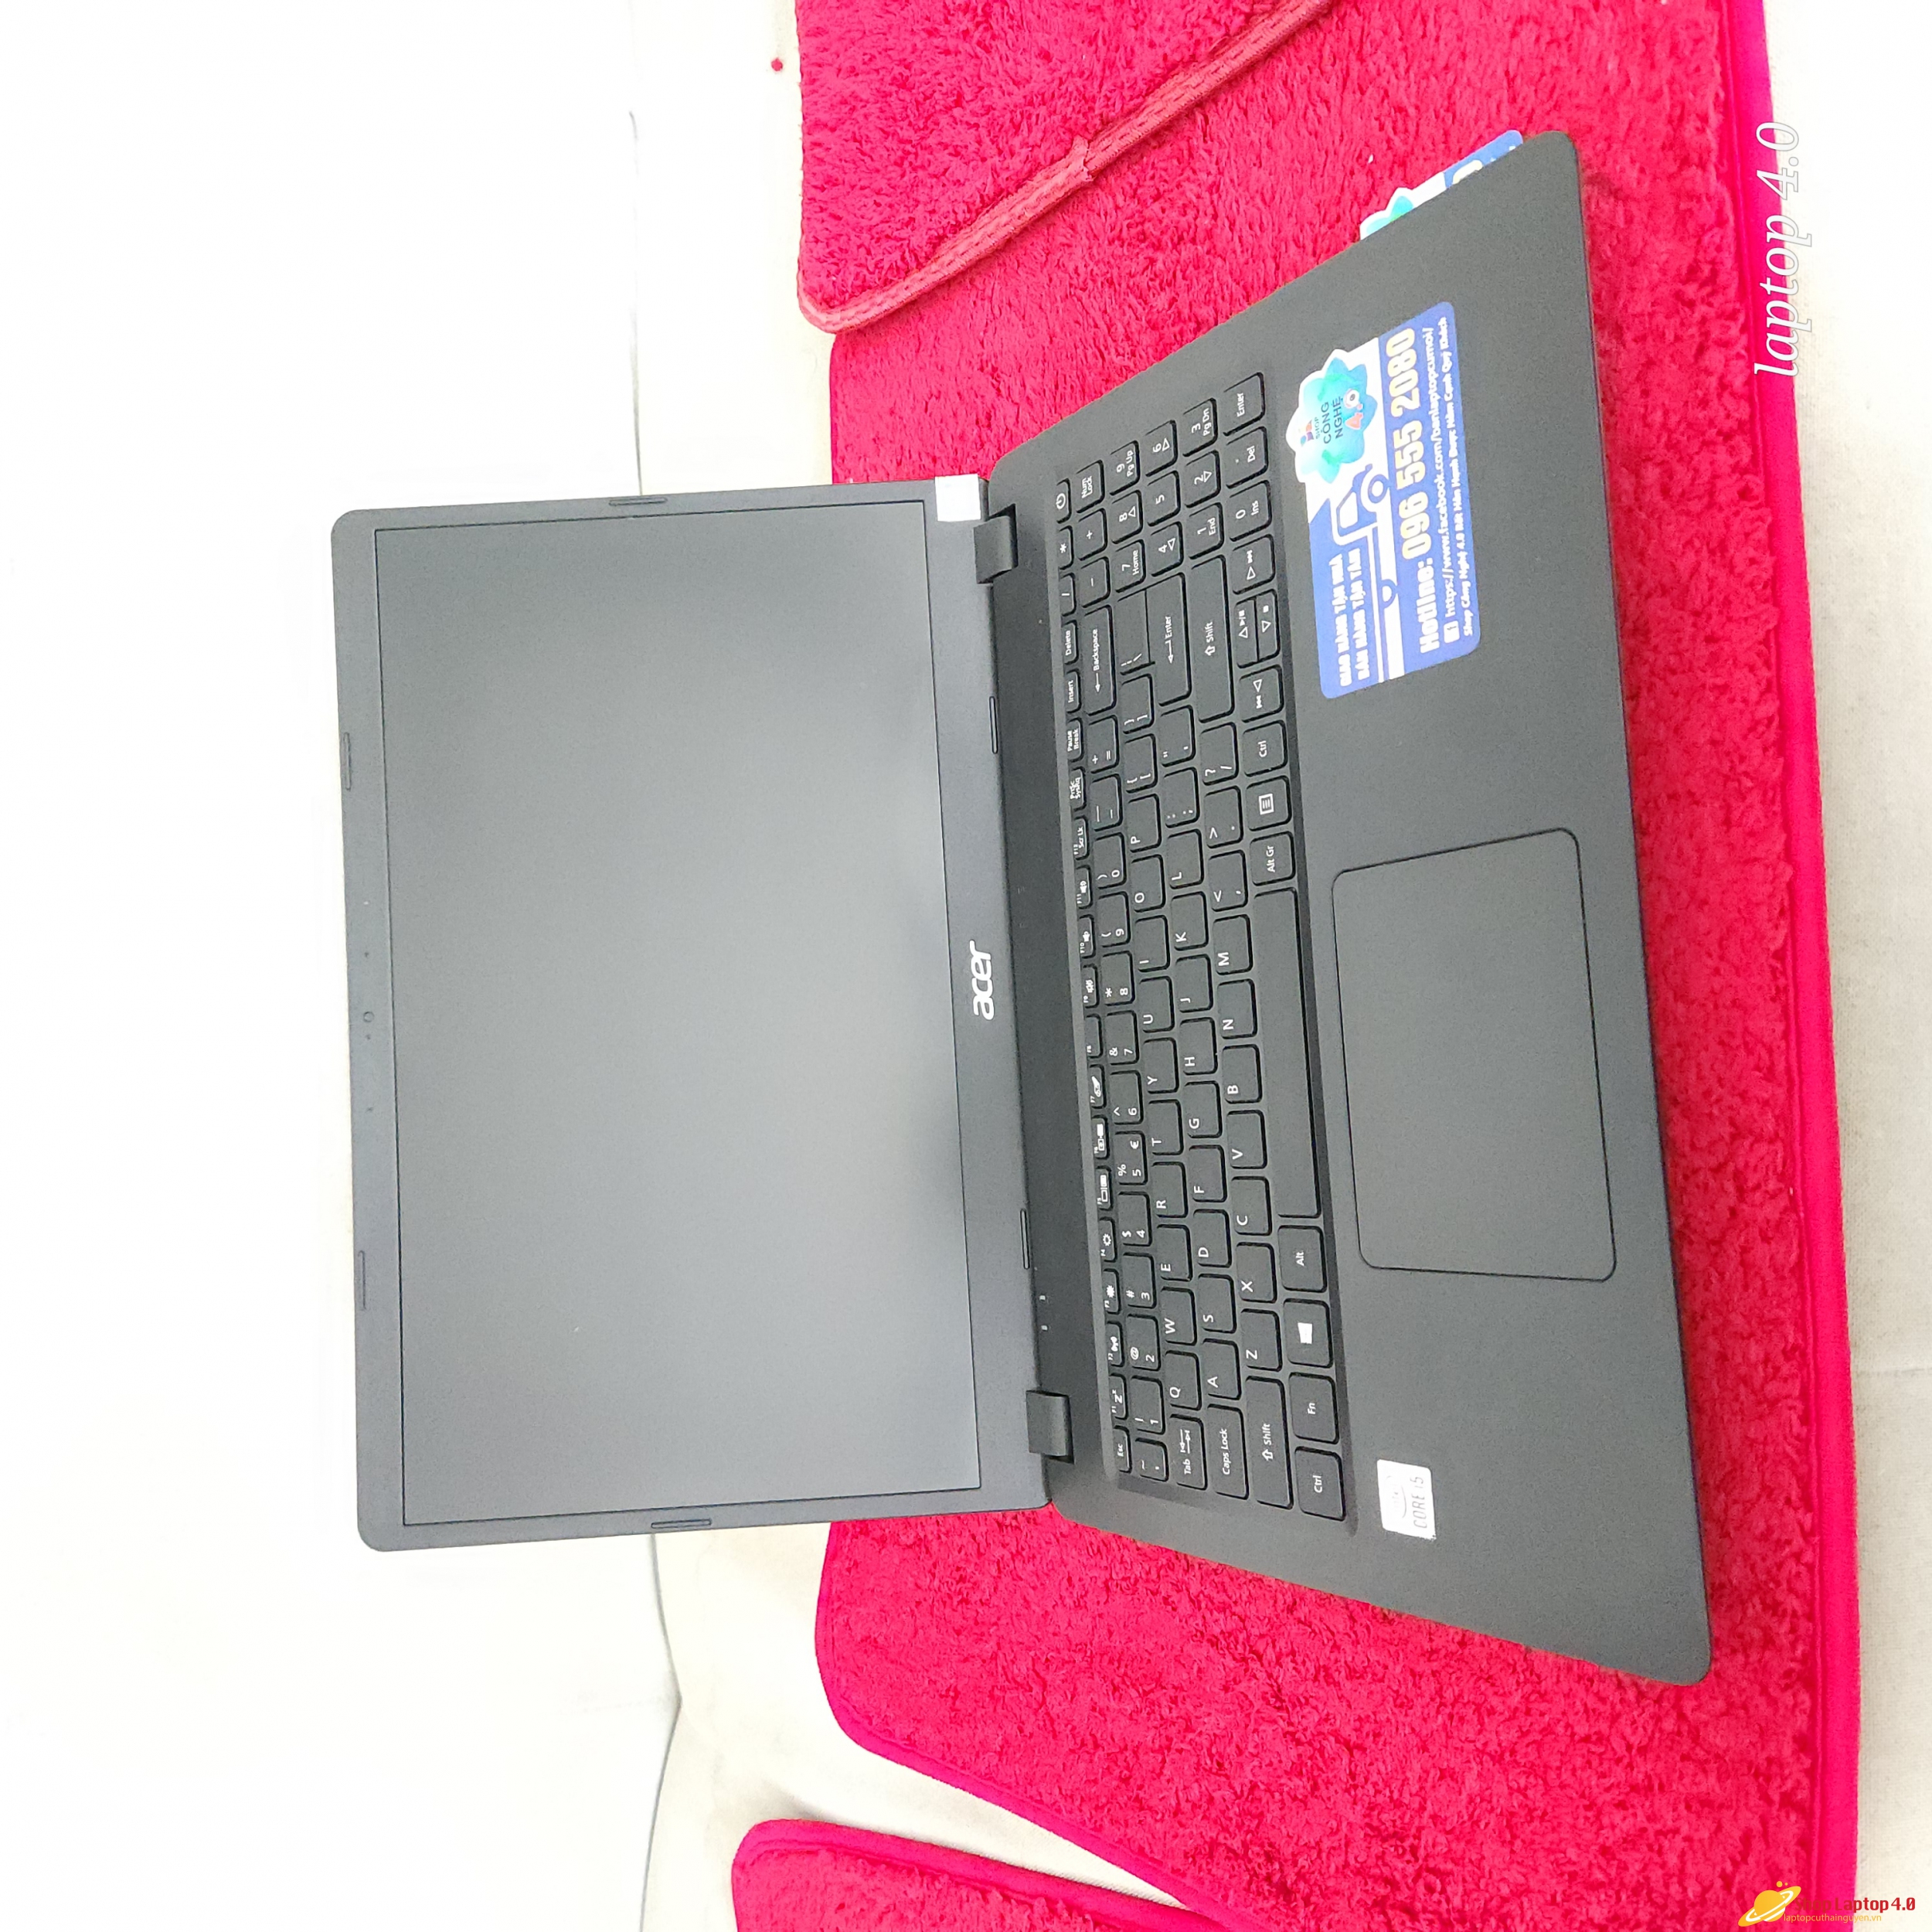 Laptop acer i5 1035g1 ram 8g ssd 256g 15.6 in full hd